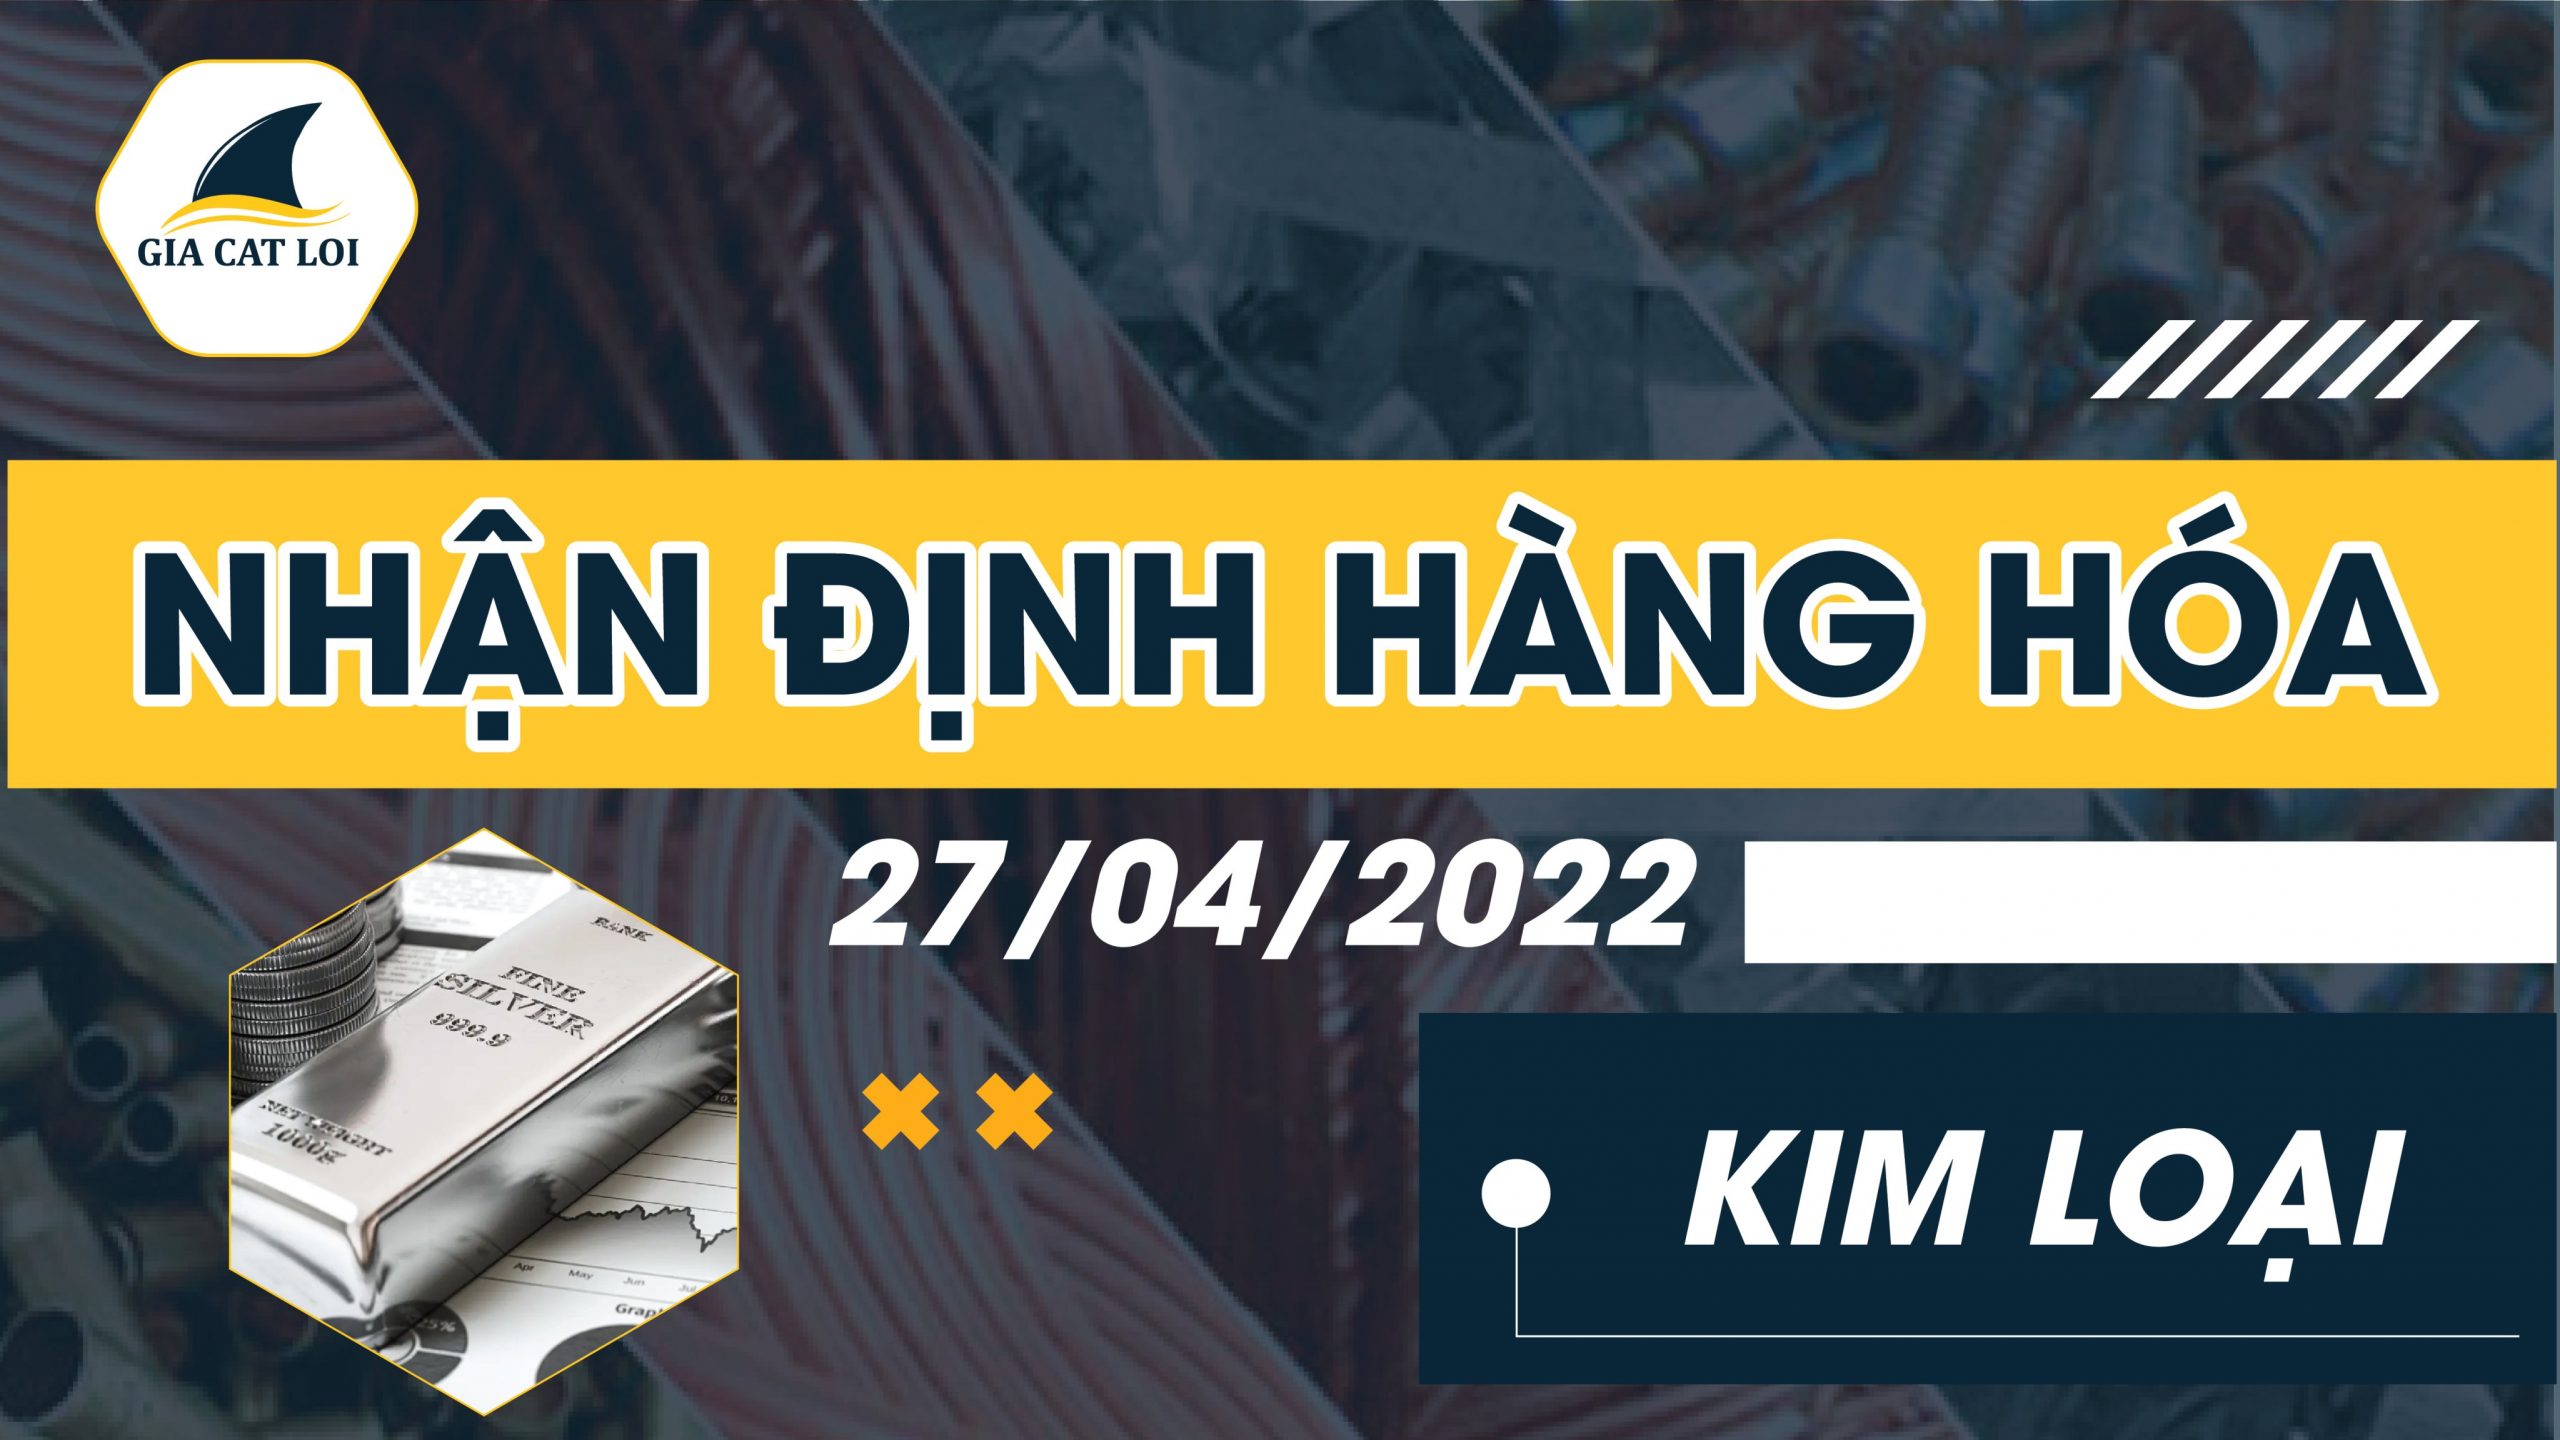 Nhận Định Thị Trường Kim Loại 27/04/2022